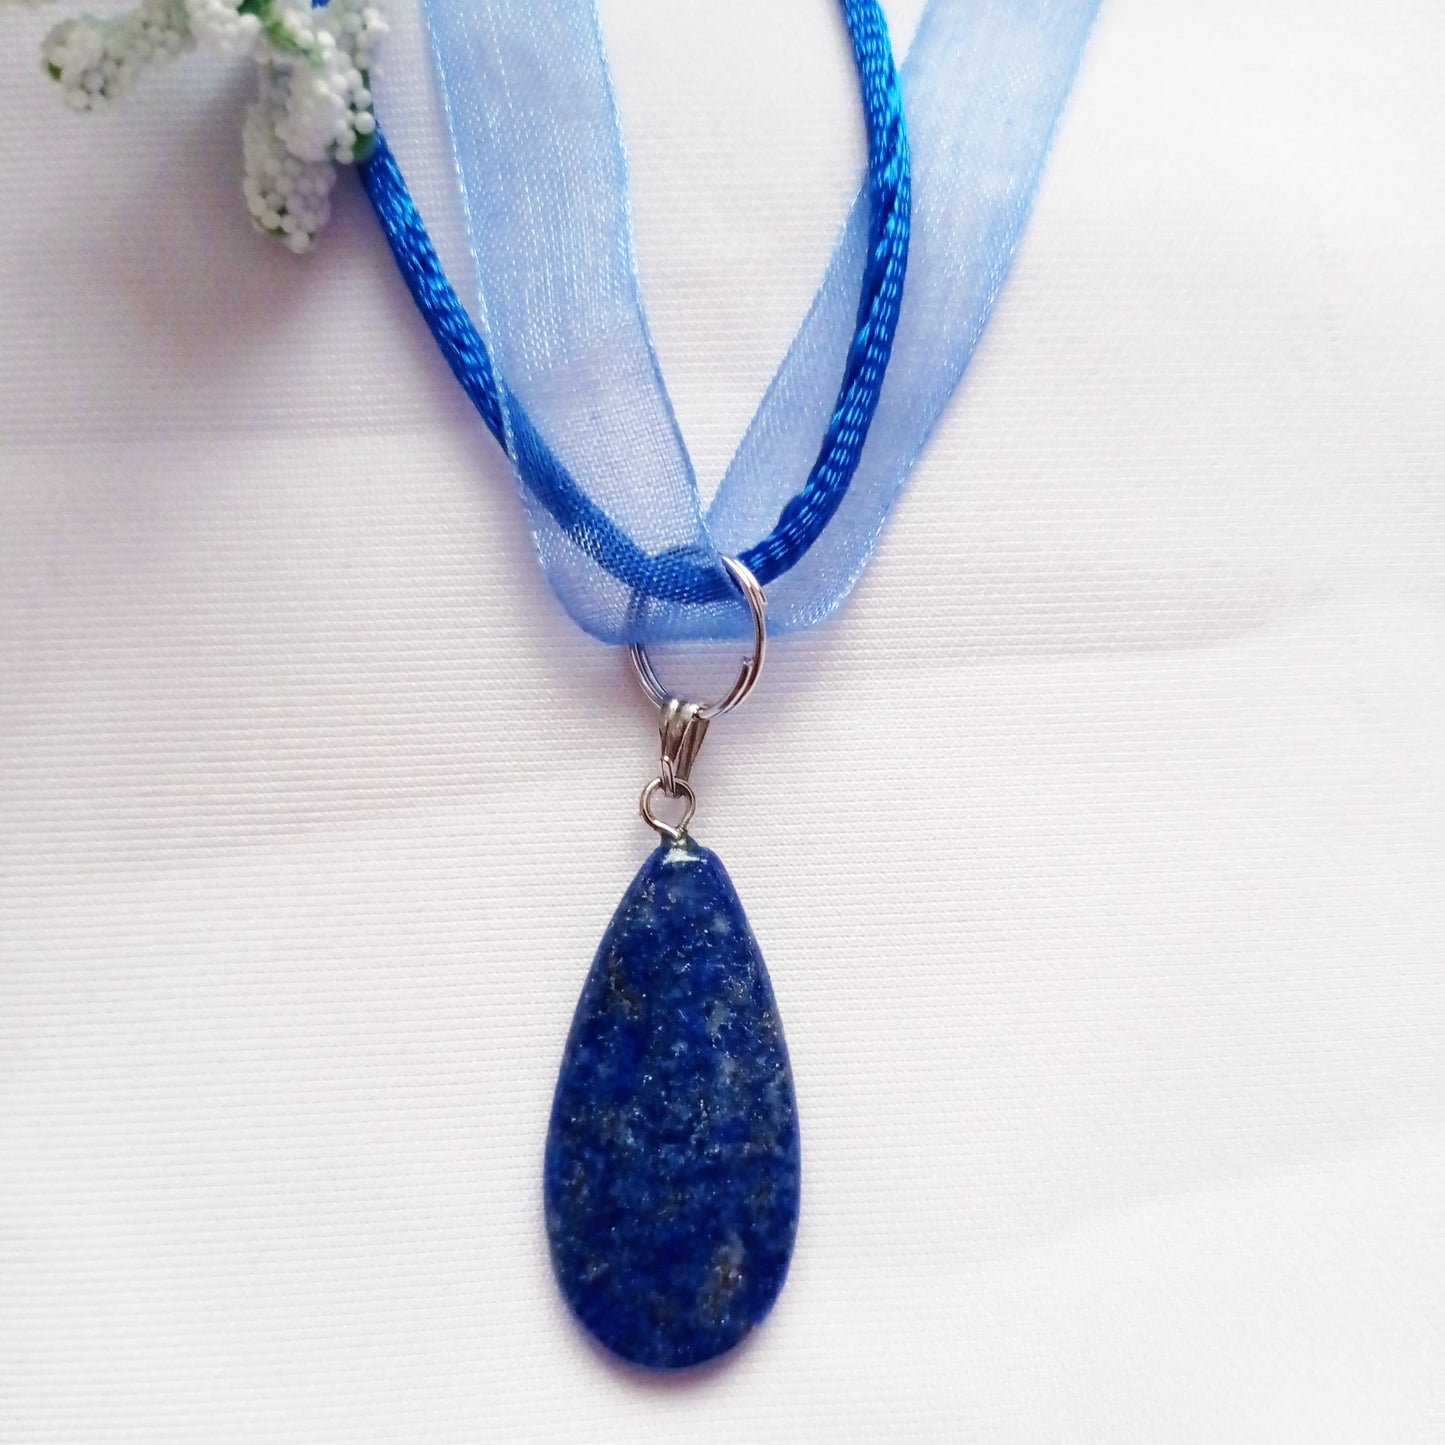 Lapis Lazuli Necklace, Blue Ribbon Necklace, Gemstone Necklace, Lapis Lazuli Pendant | by nlanlaVictory-4